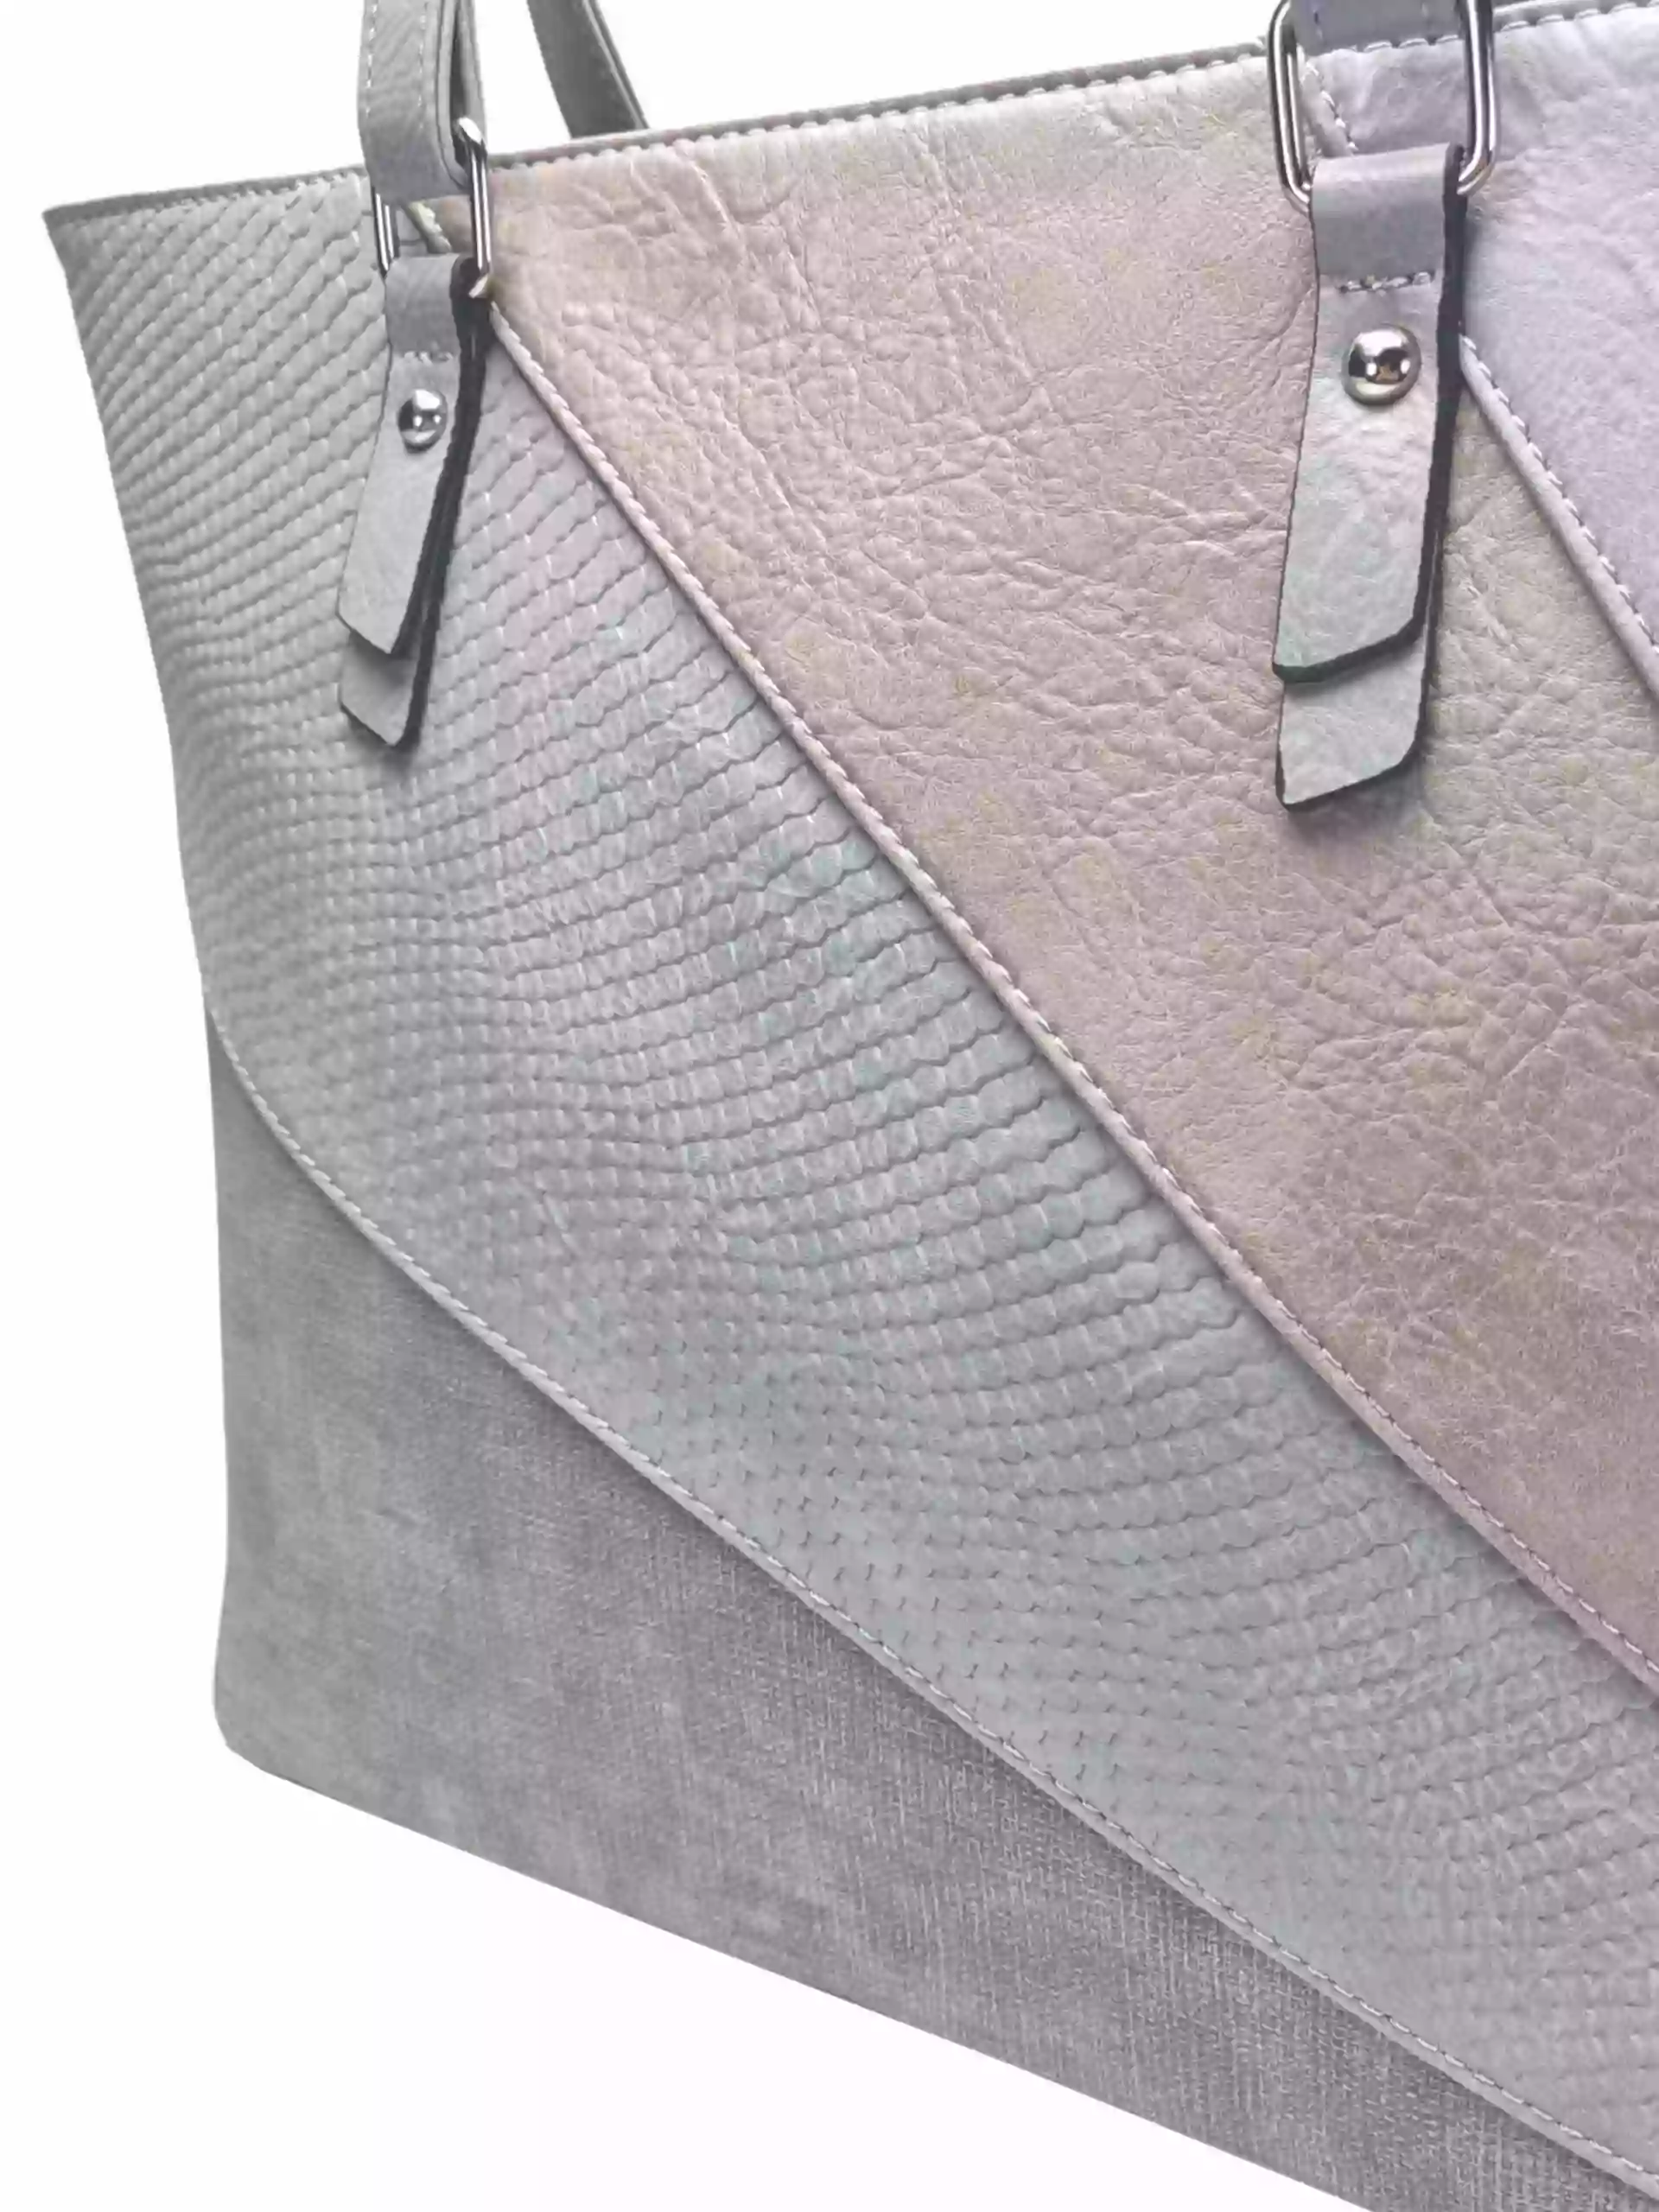 Středně šedá dámská kabelka přes rameno se vzory, Tapple, H17224, detail kabelky přes rameno